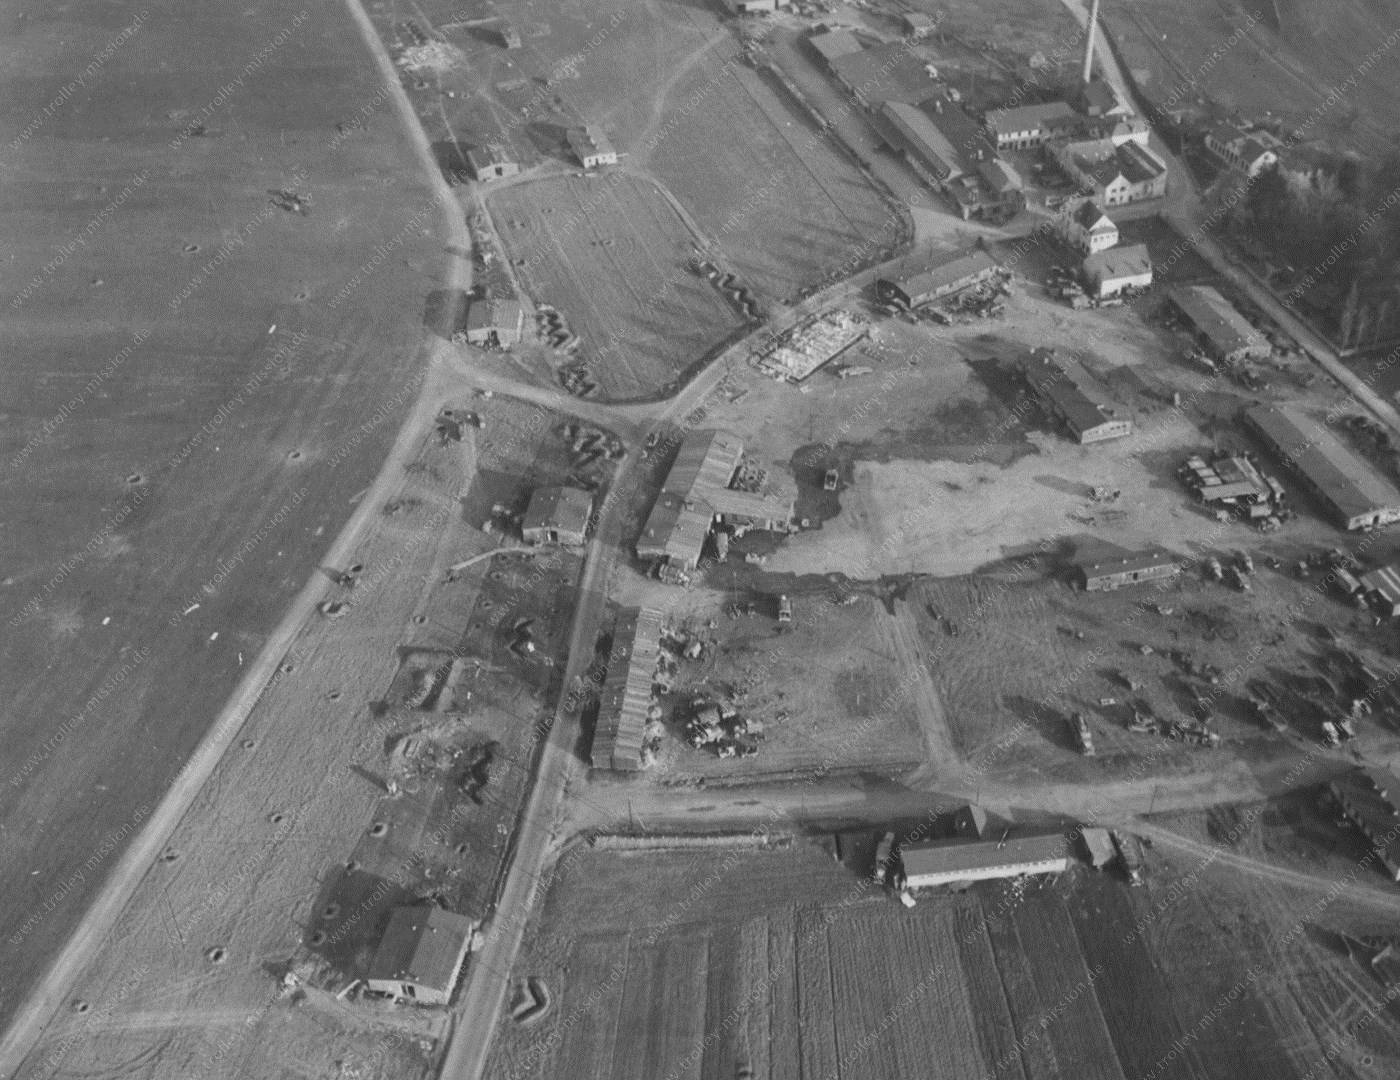 Flugplatz Mendig 1945 - Luftaufnahme aus dem Zweiten Weltkrieg